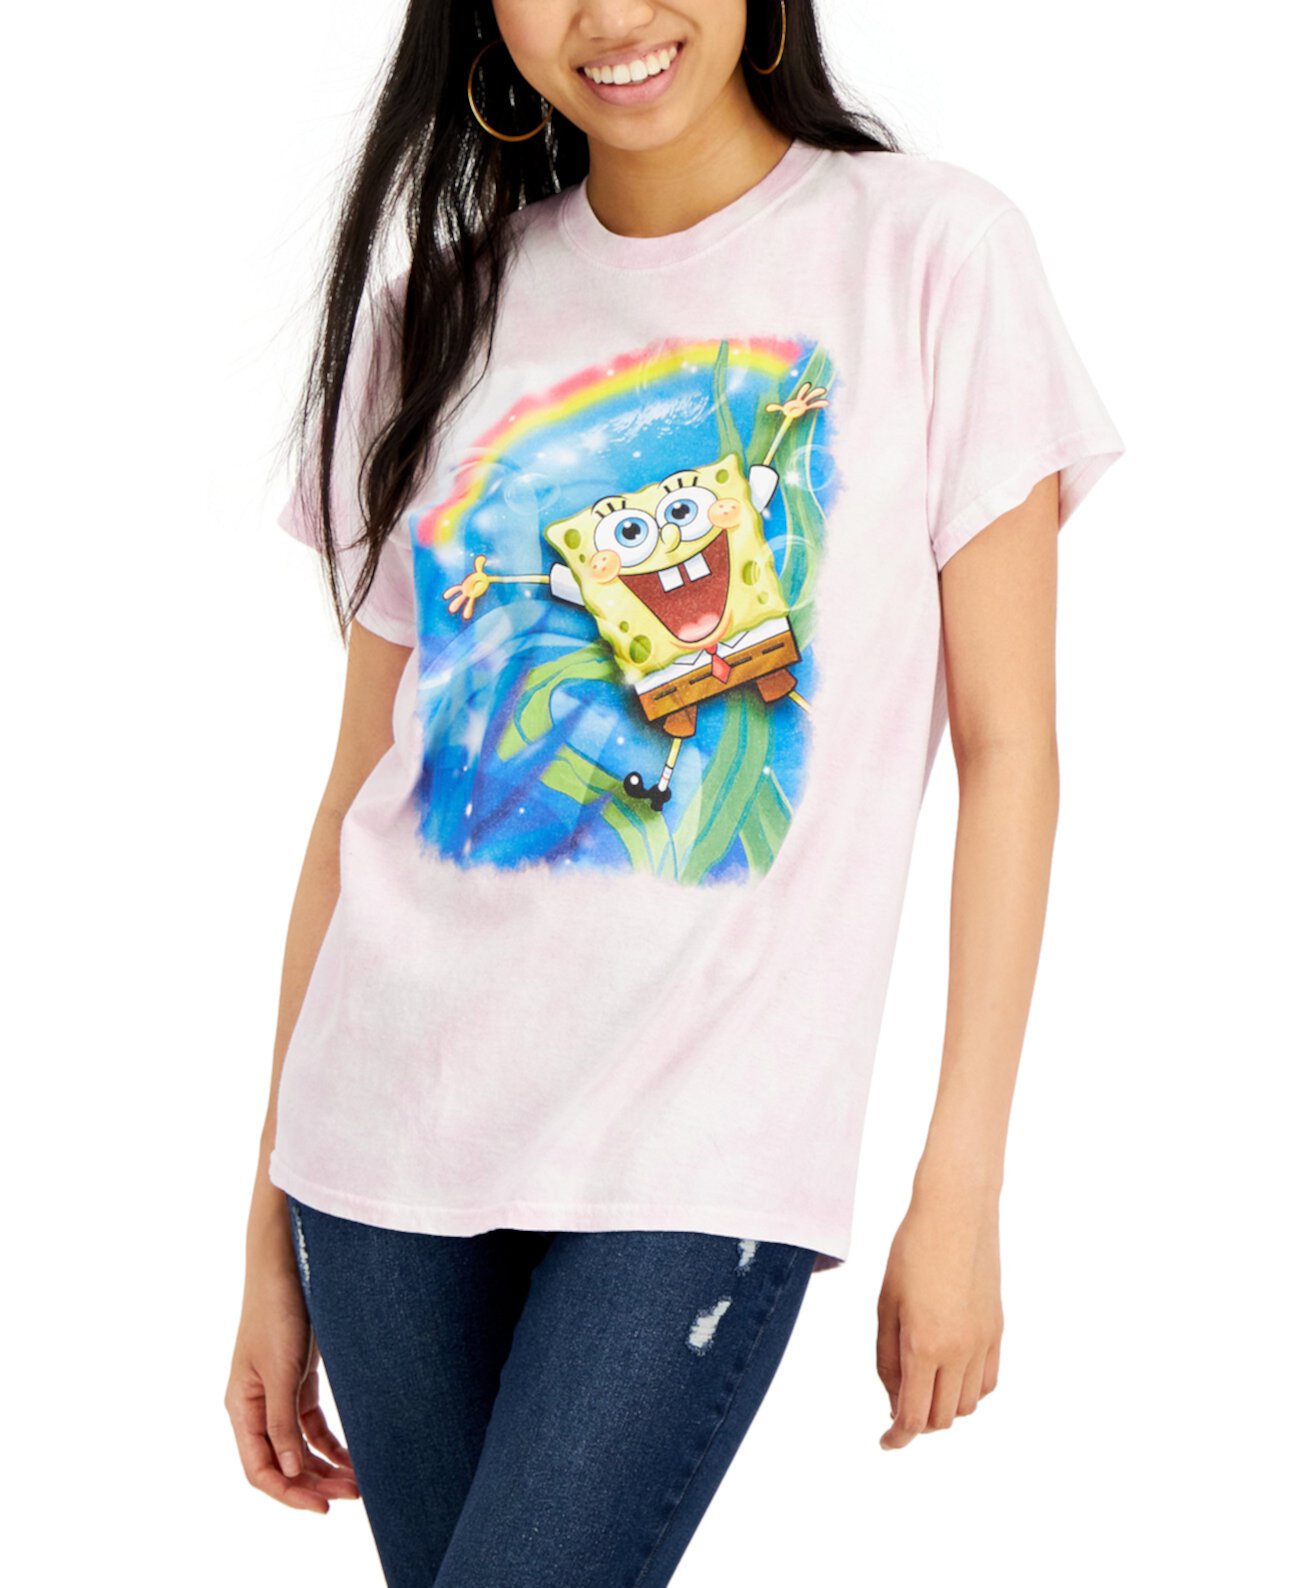 Хлопковая футболка для юниоров SpongeBob с радужной графикой Mad Engine